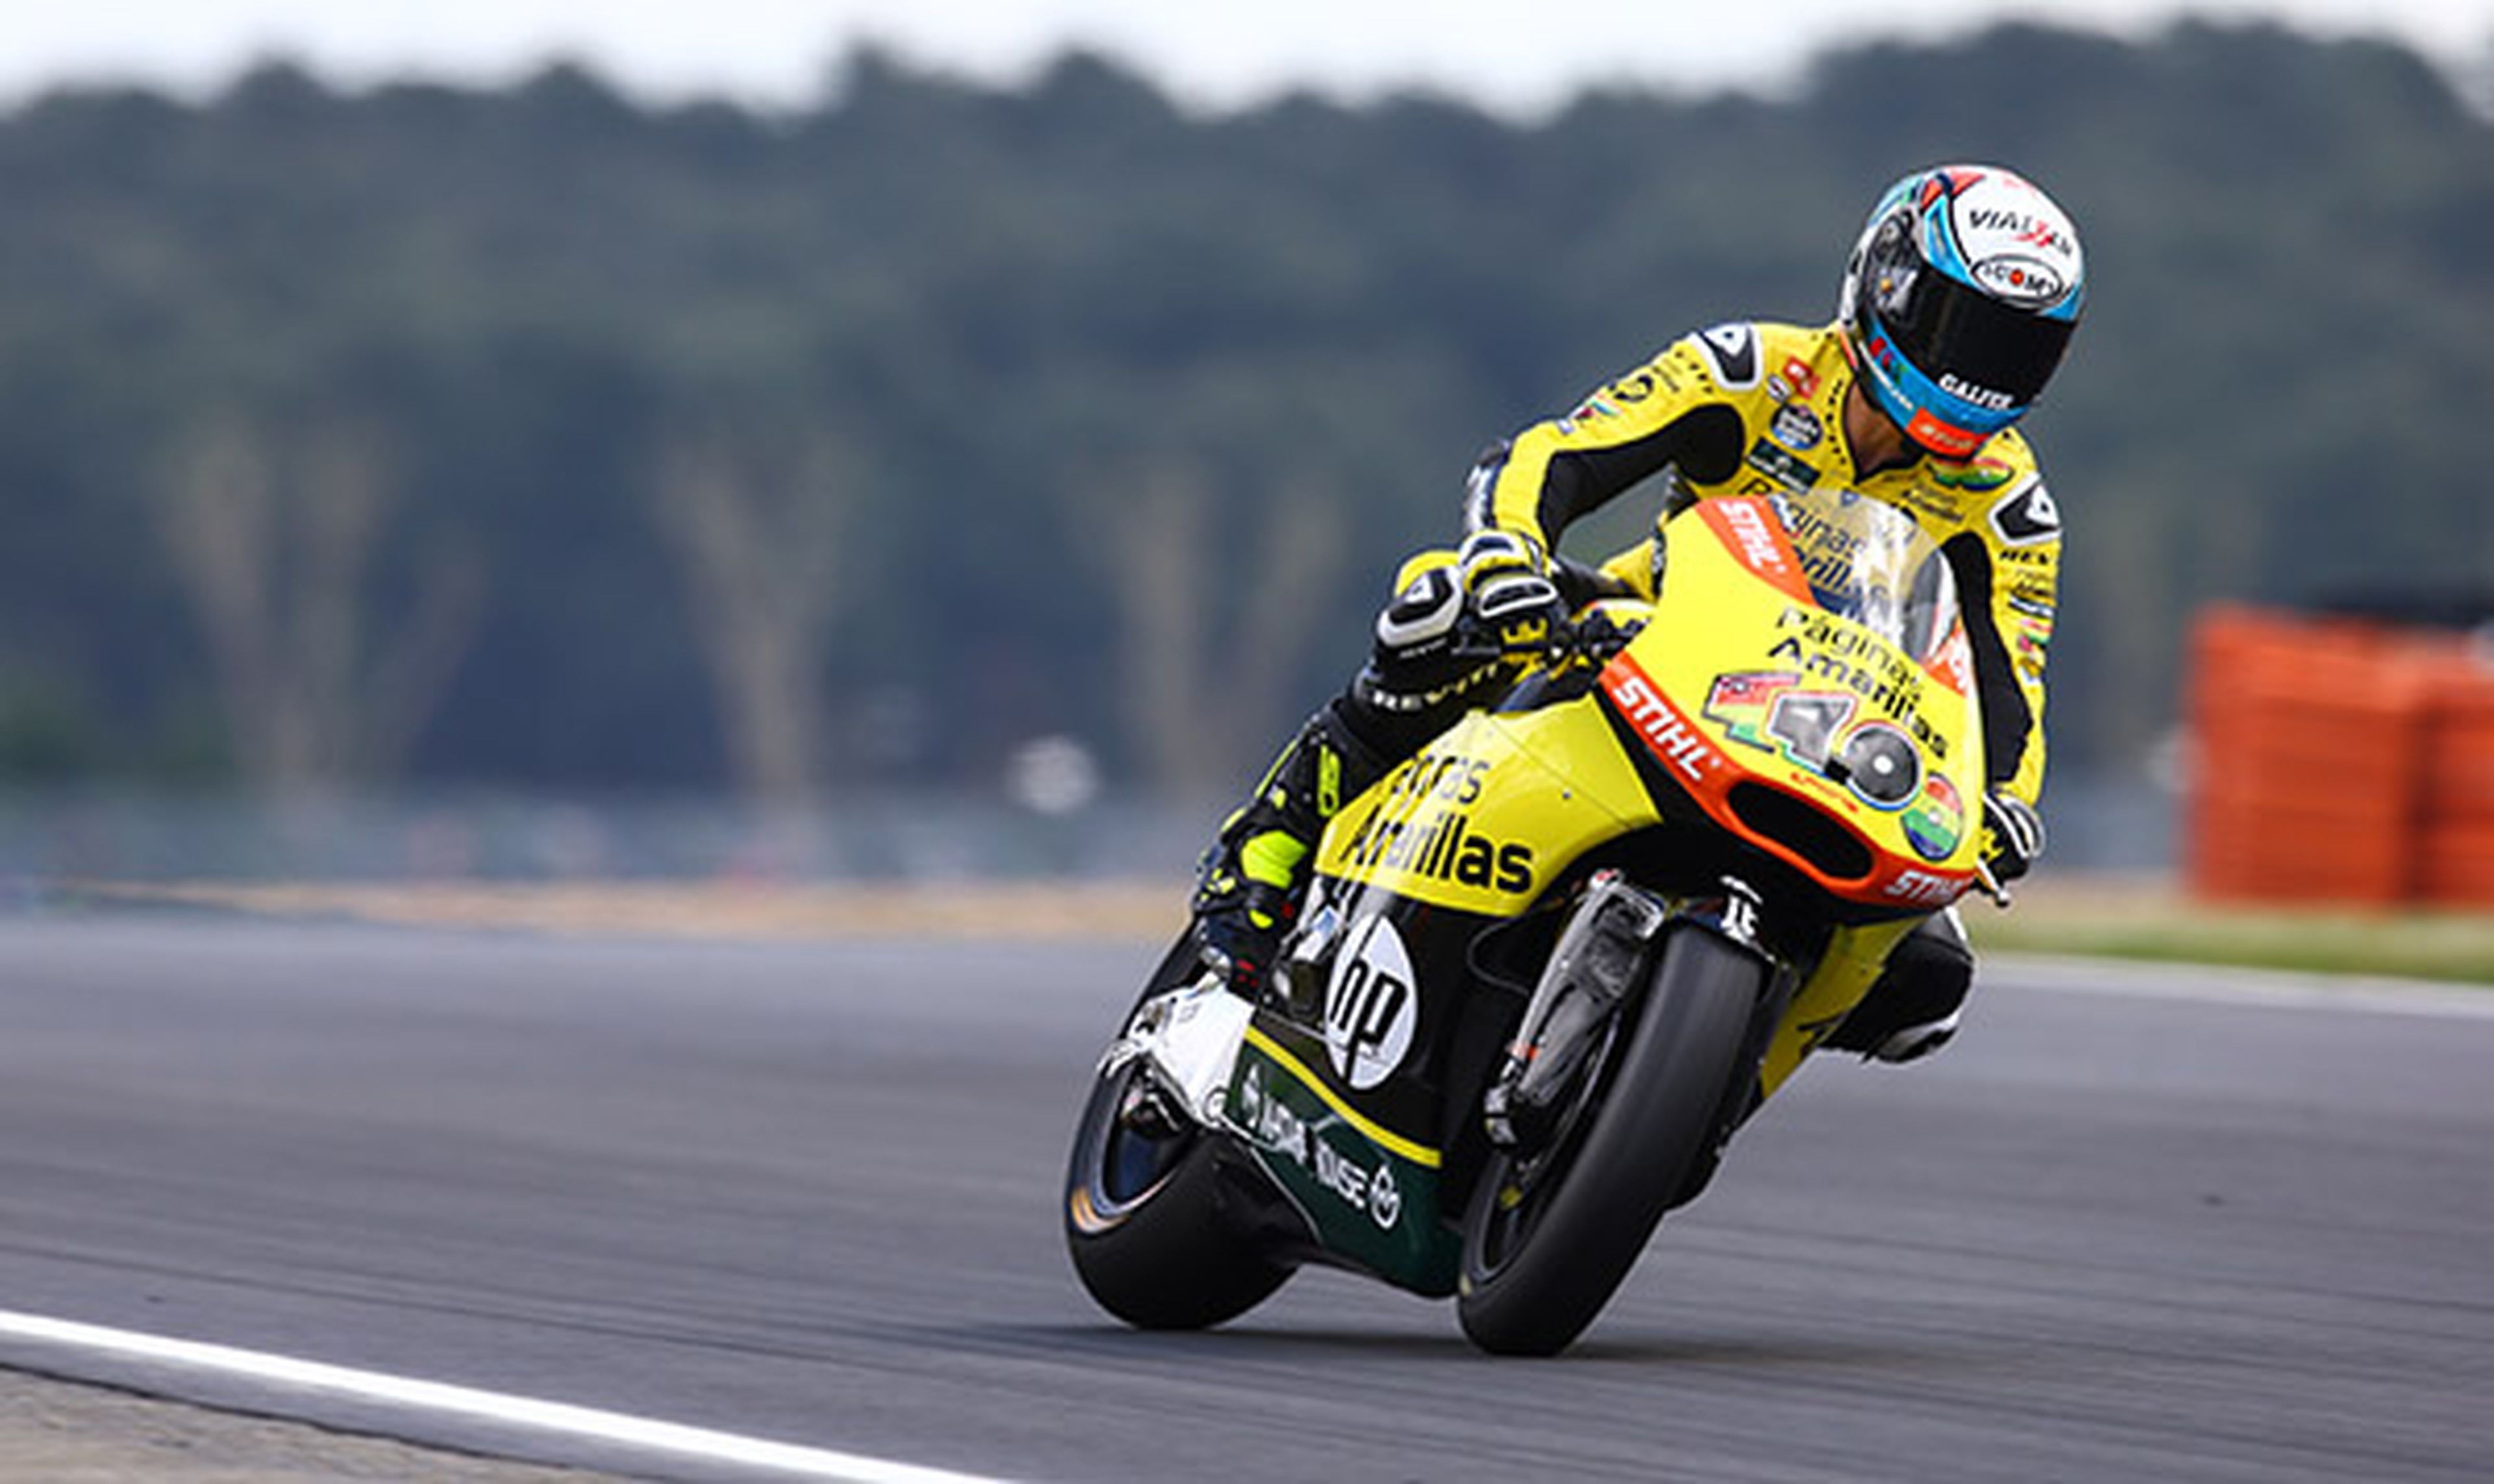 Clasificación Moto2 GP de Francia 2015: Rins se estrena